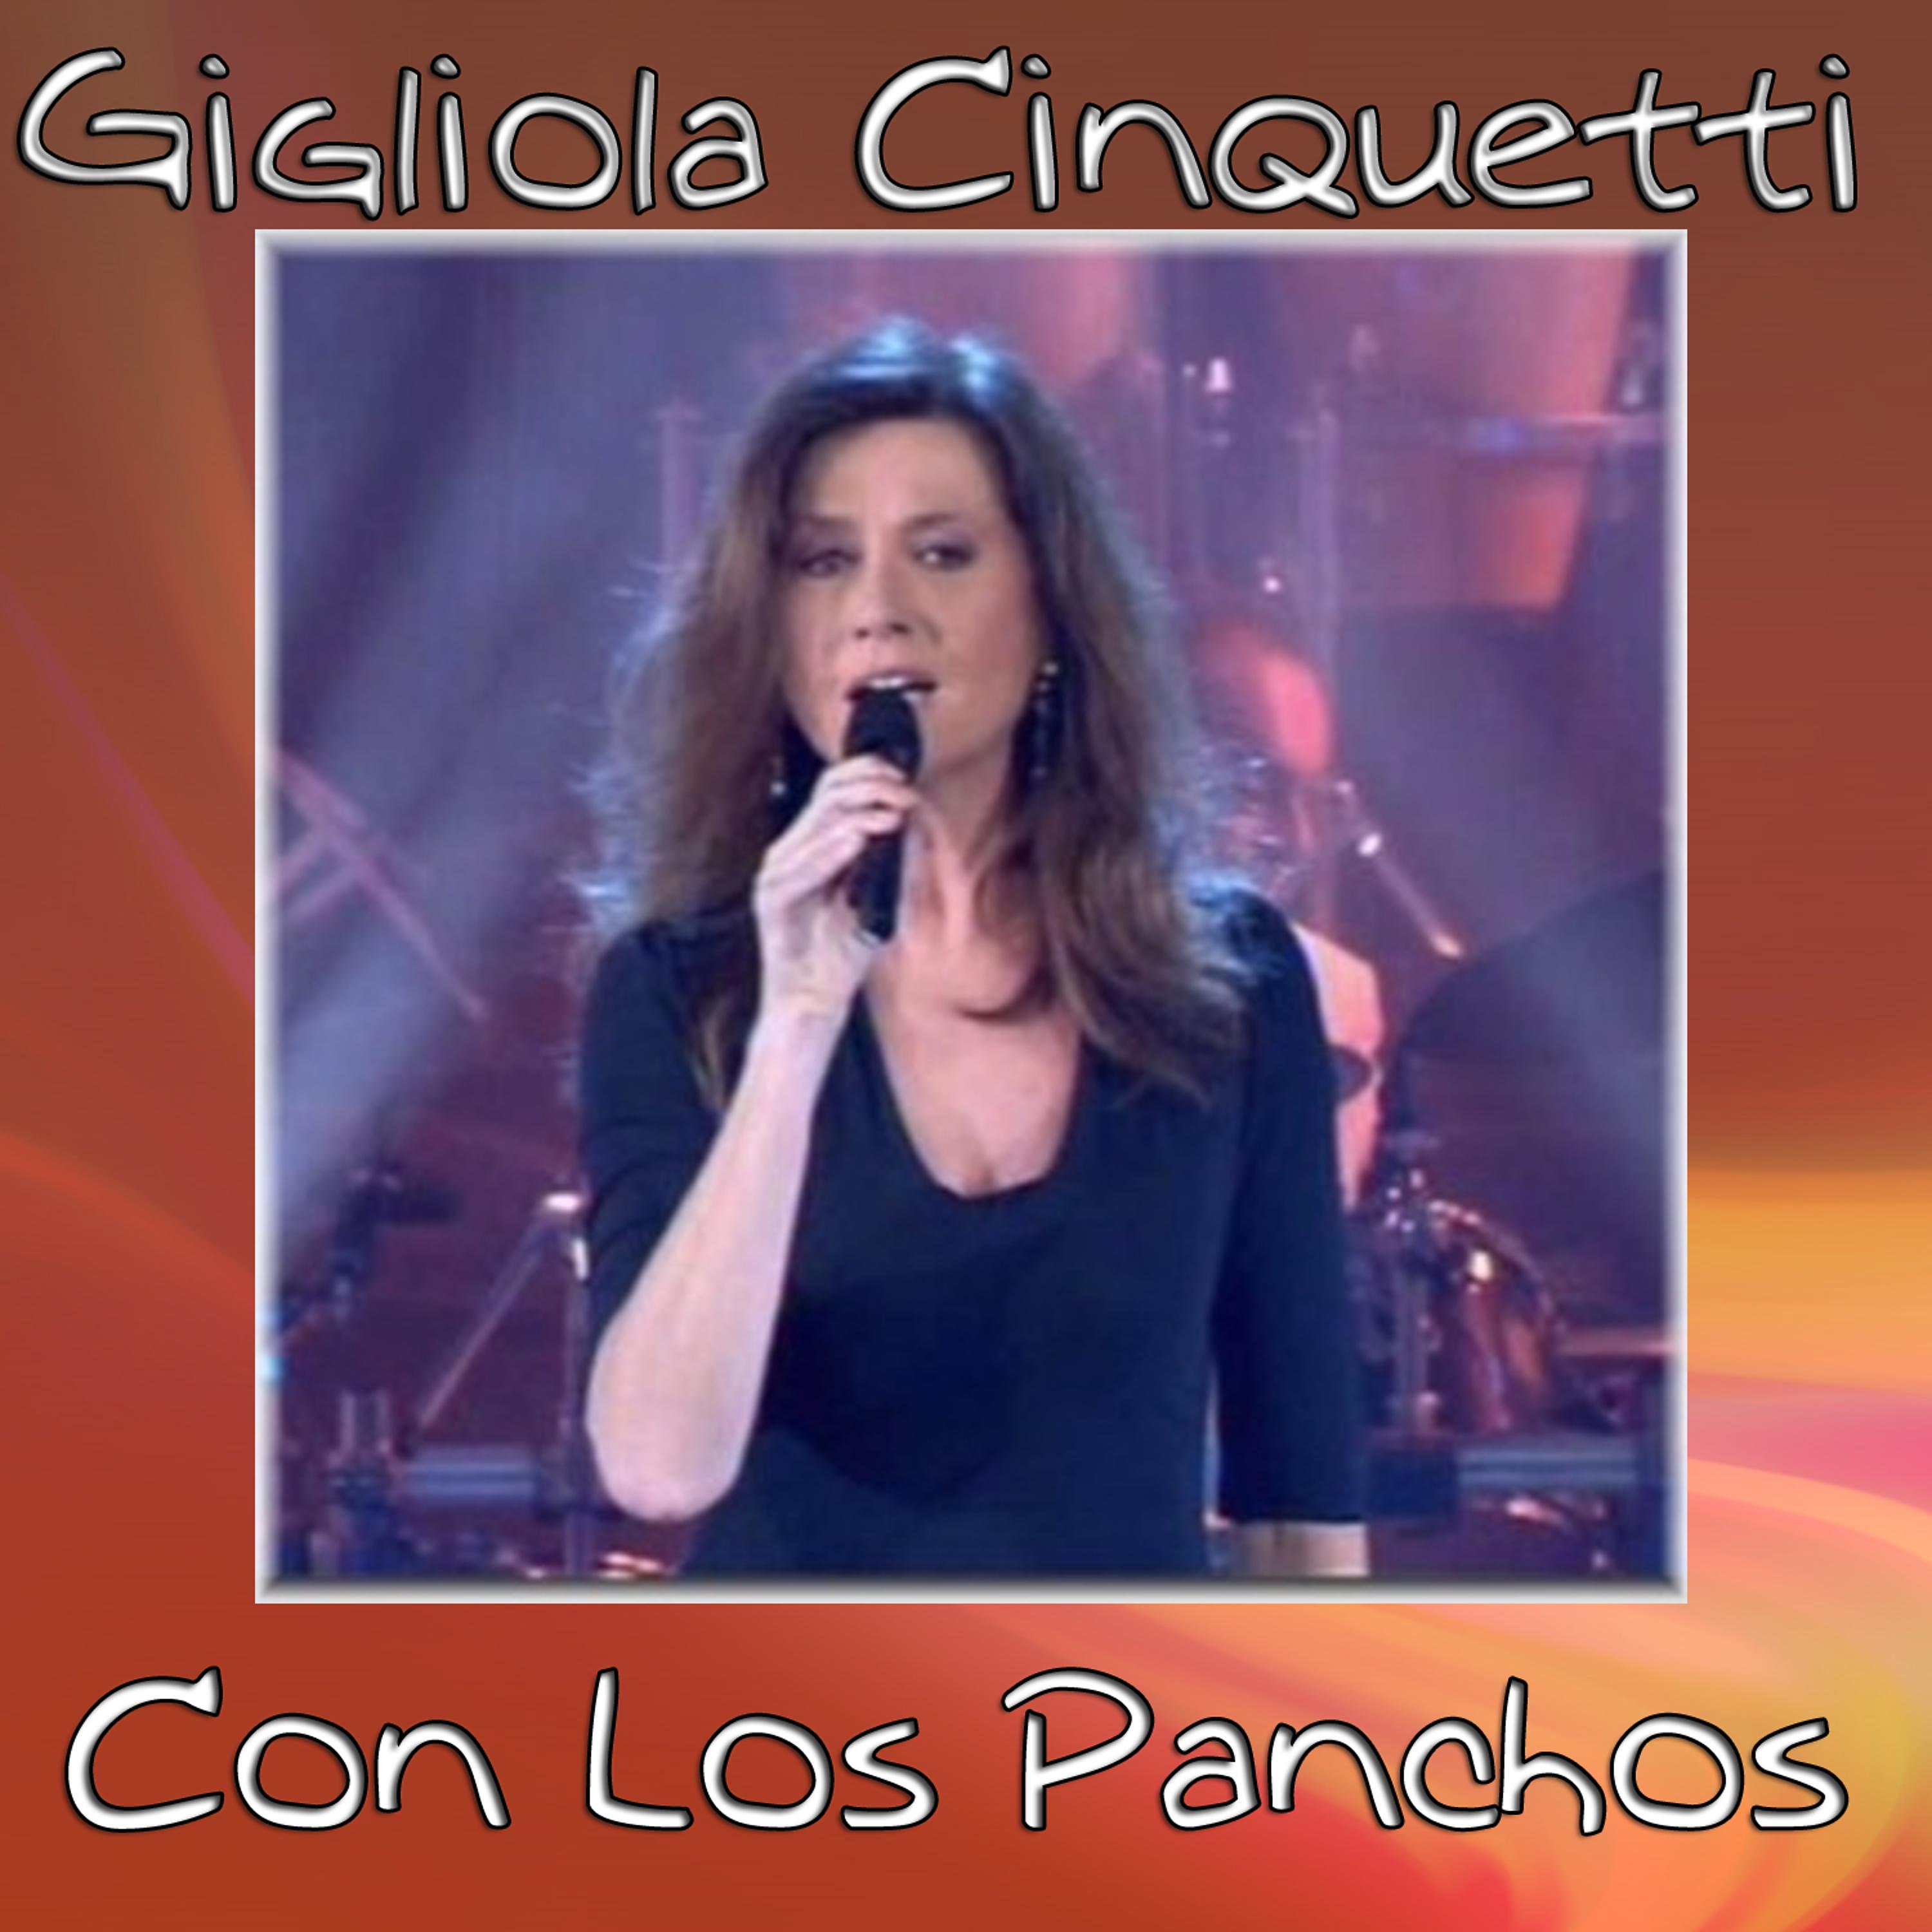 Постер альбома Gigliola Cinquetti (Los Panchos)